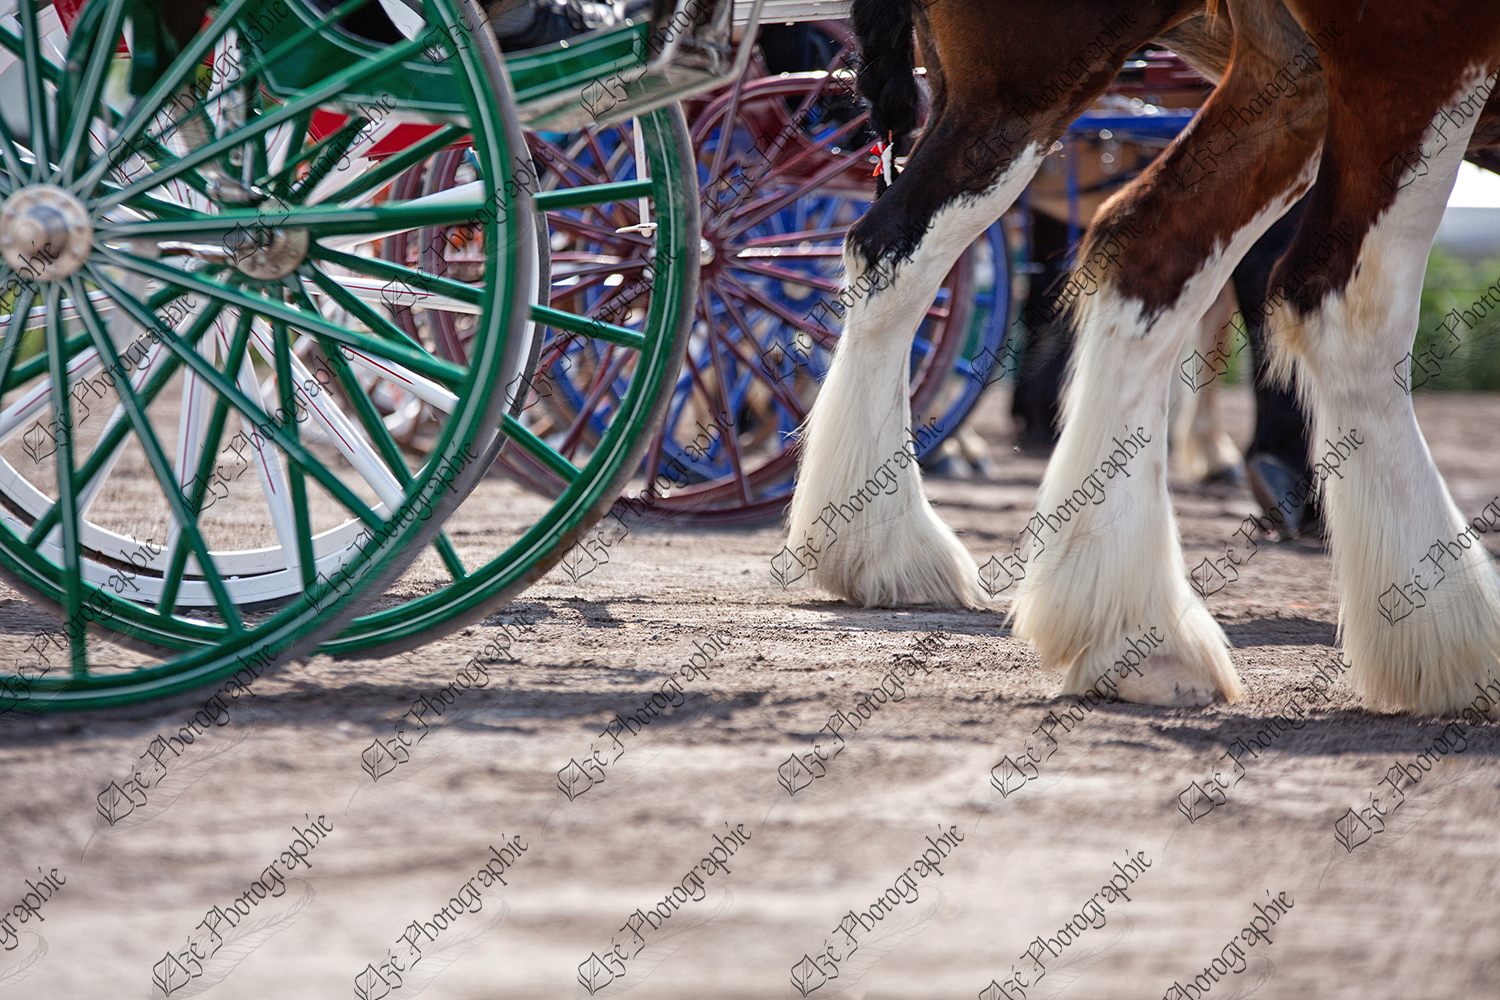 elze_photo_7409_pattes_chevaux_spectacle_horse_show_cart